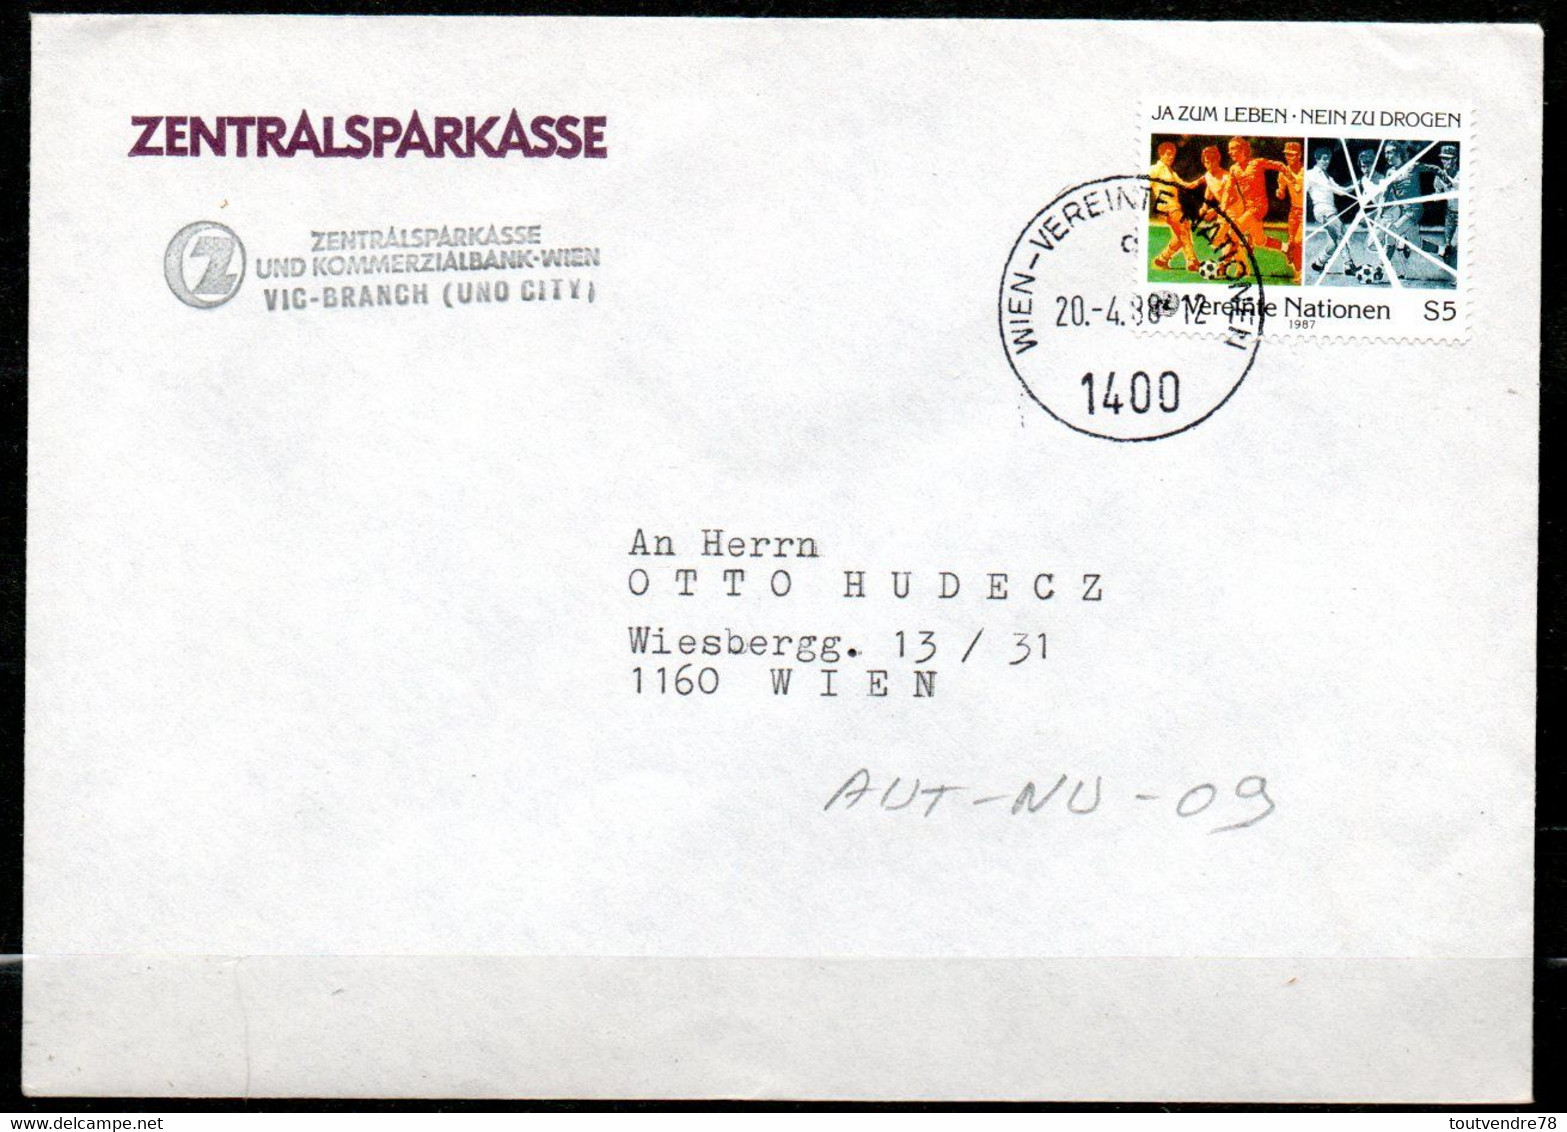 AUT-NU-09 : Autriche NU 1988 / Drogue Dans Le Sport / Banque Centrale D'épargne - Storia Postale